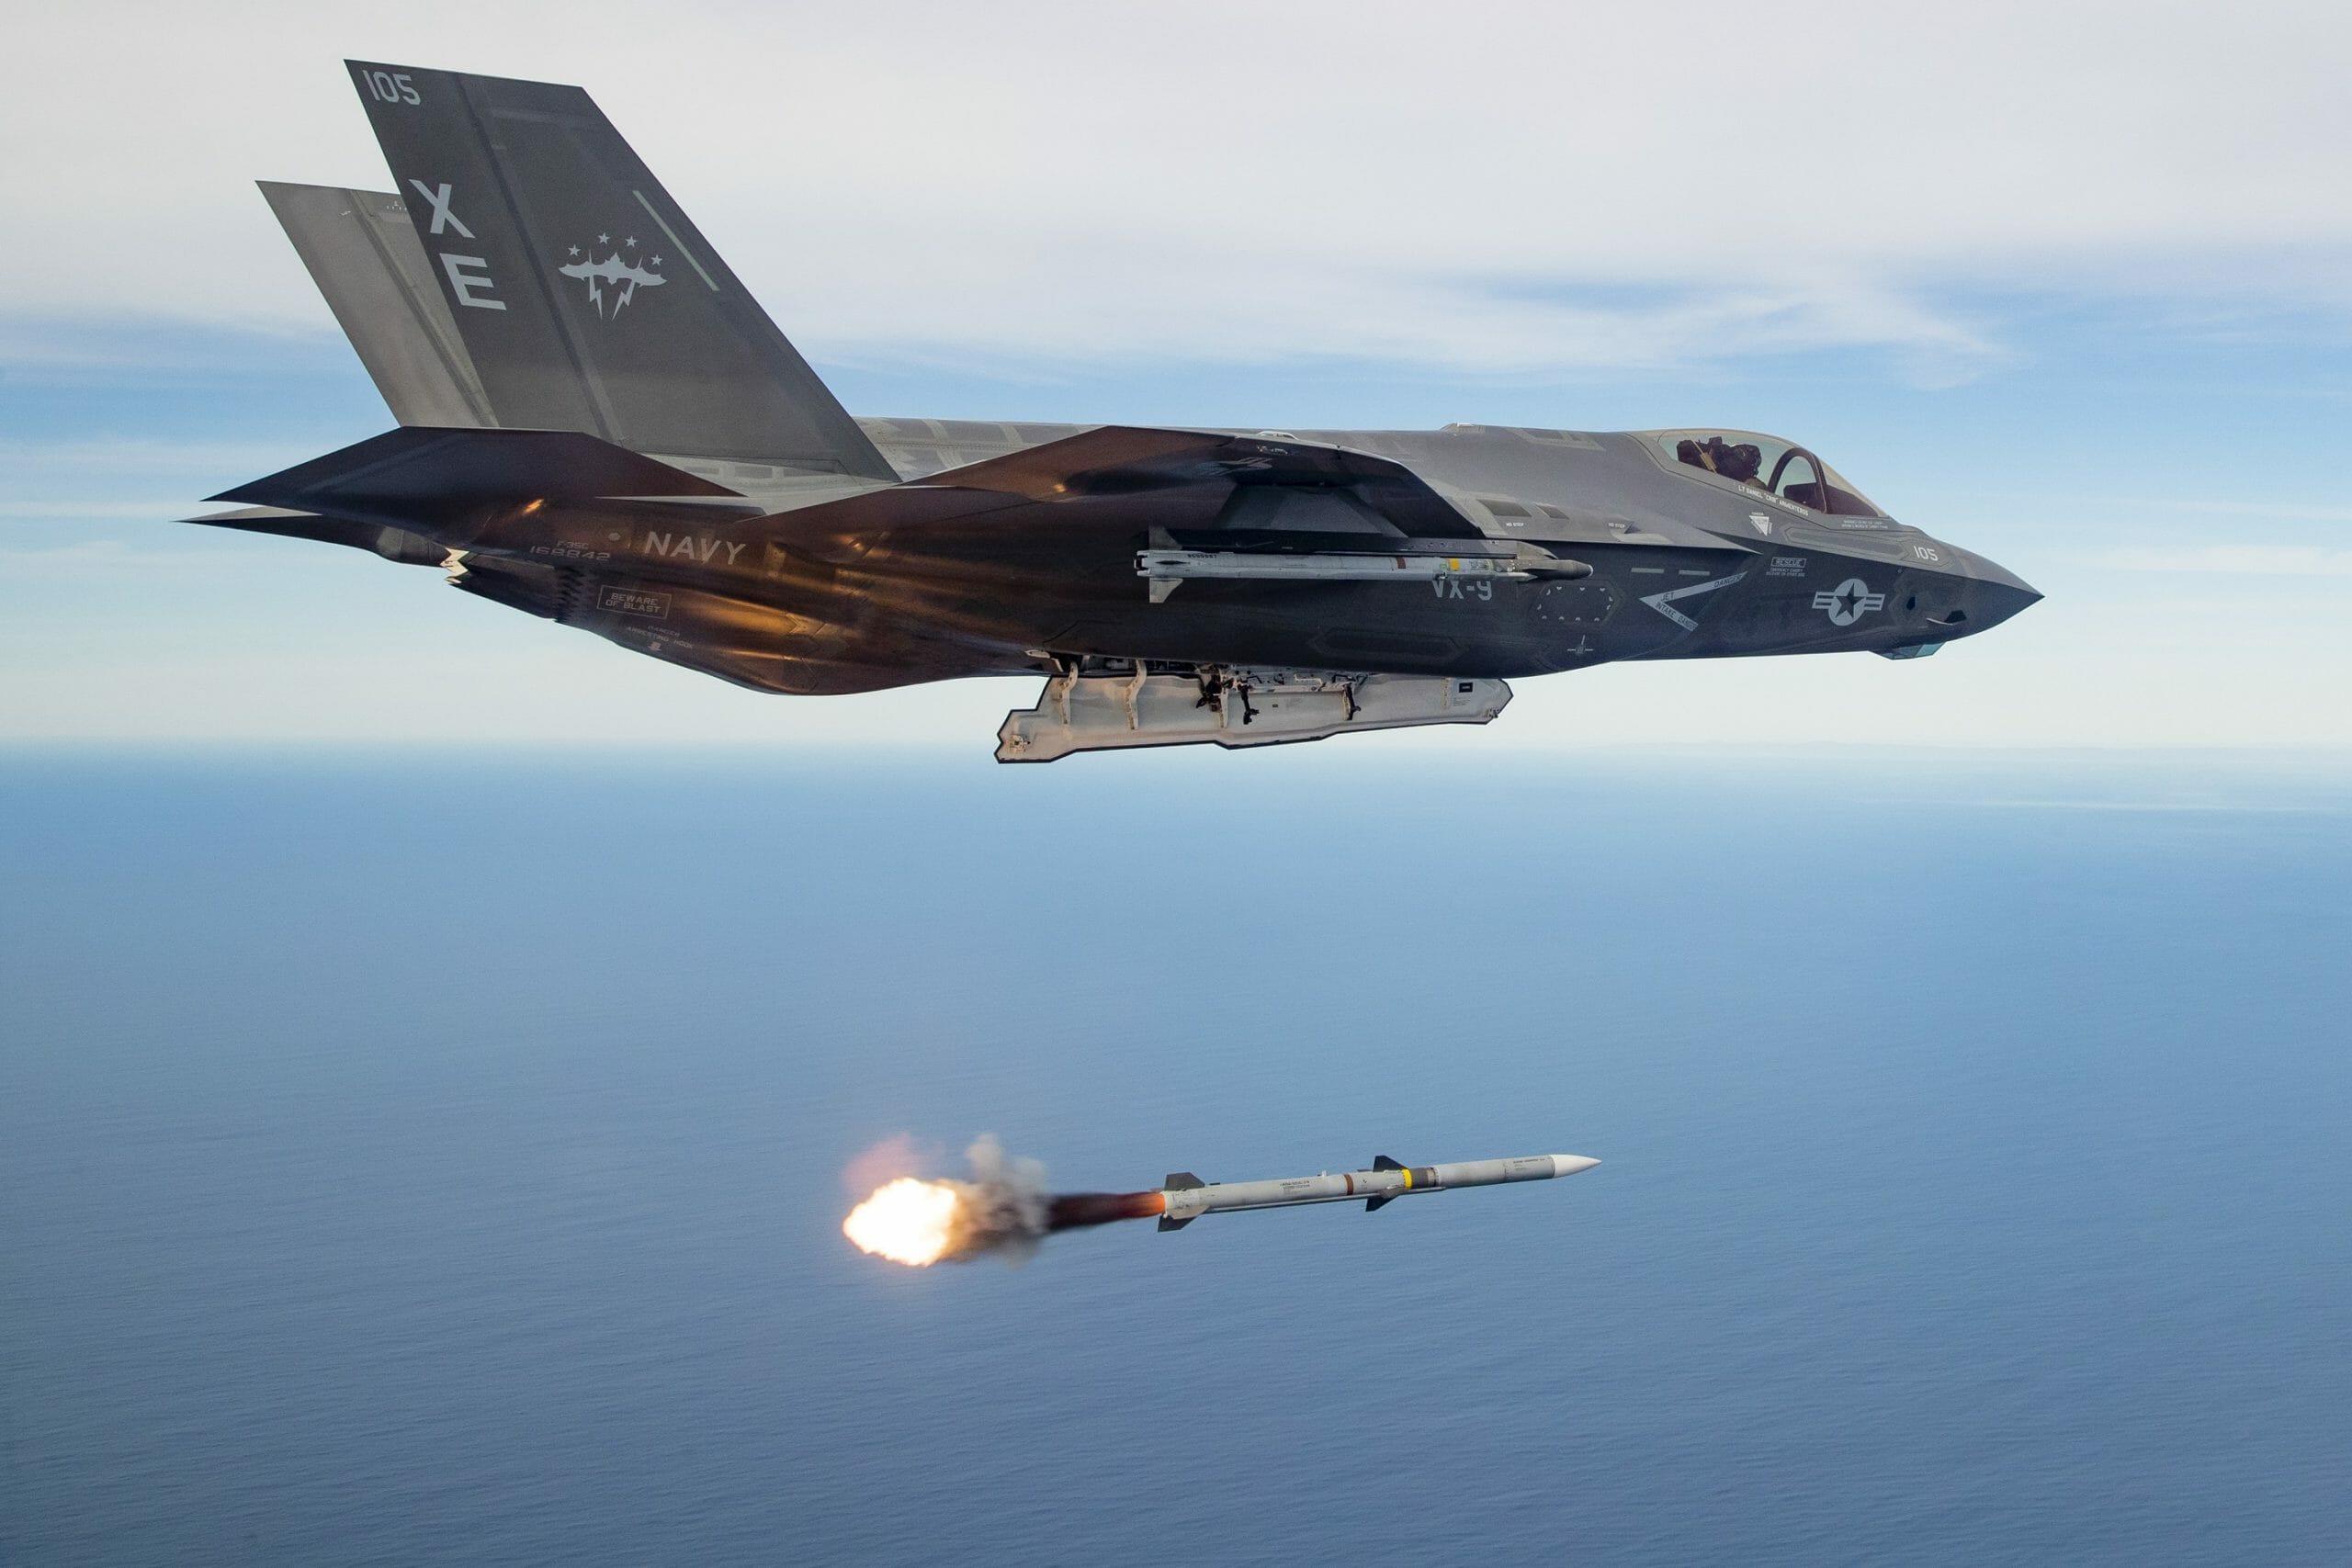 Αξίζει τελικά ο “μύθος” των  F-35 και τα 1,5 τρισεκατομμύρια δολάρια που κοστίζουν;